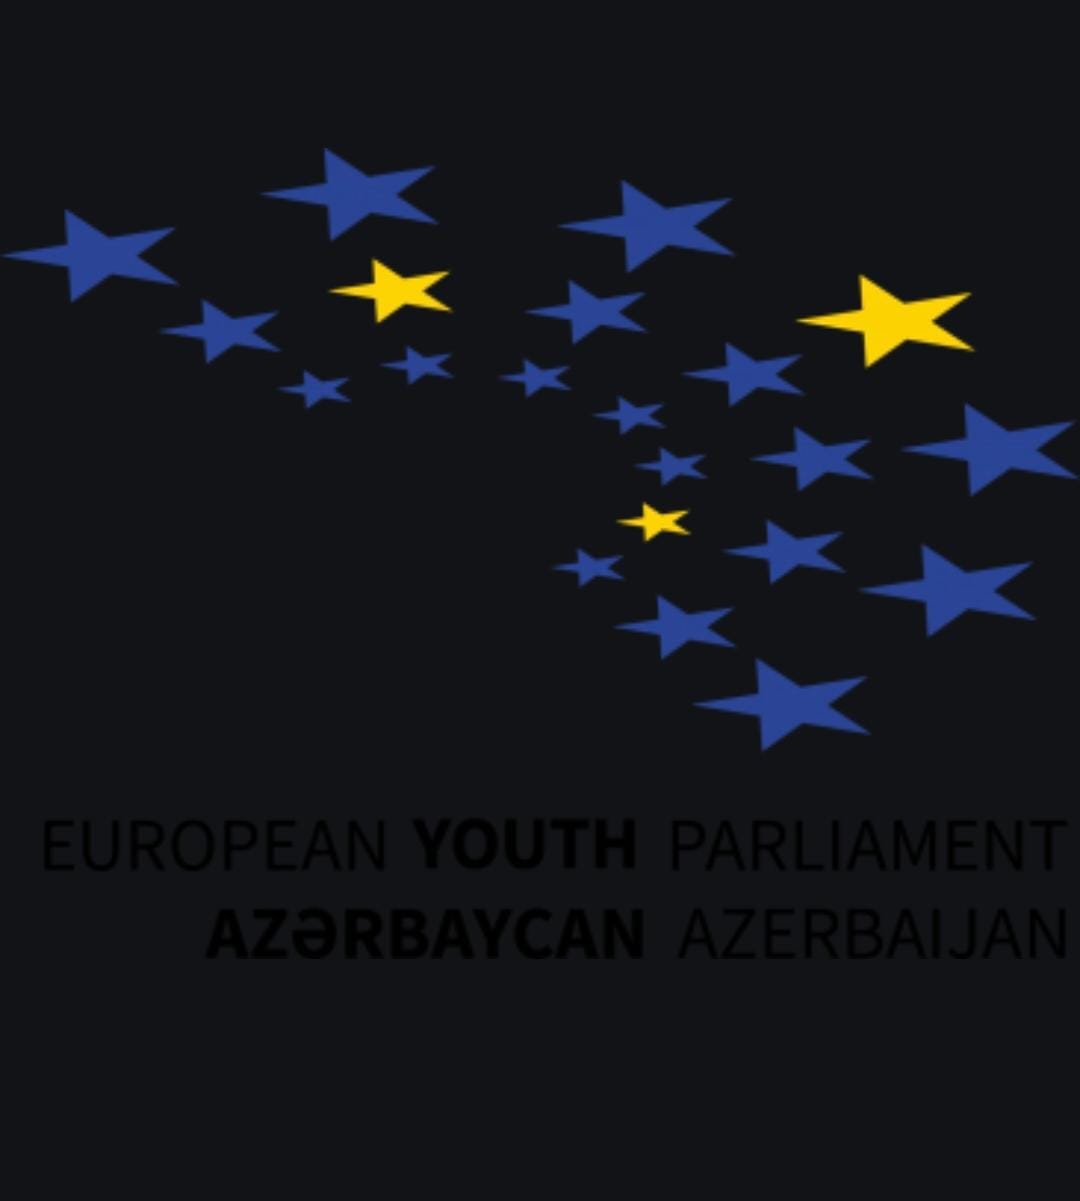 European Youth Parliament Azerbaijan